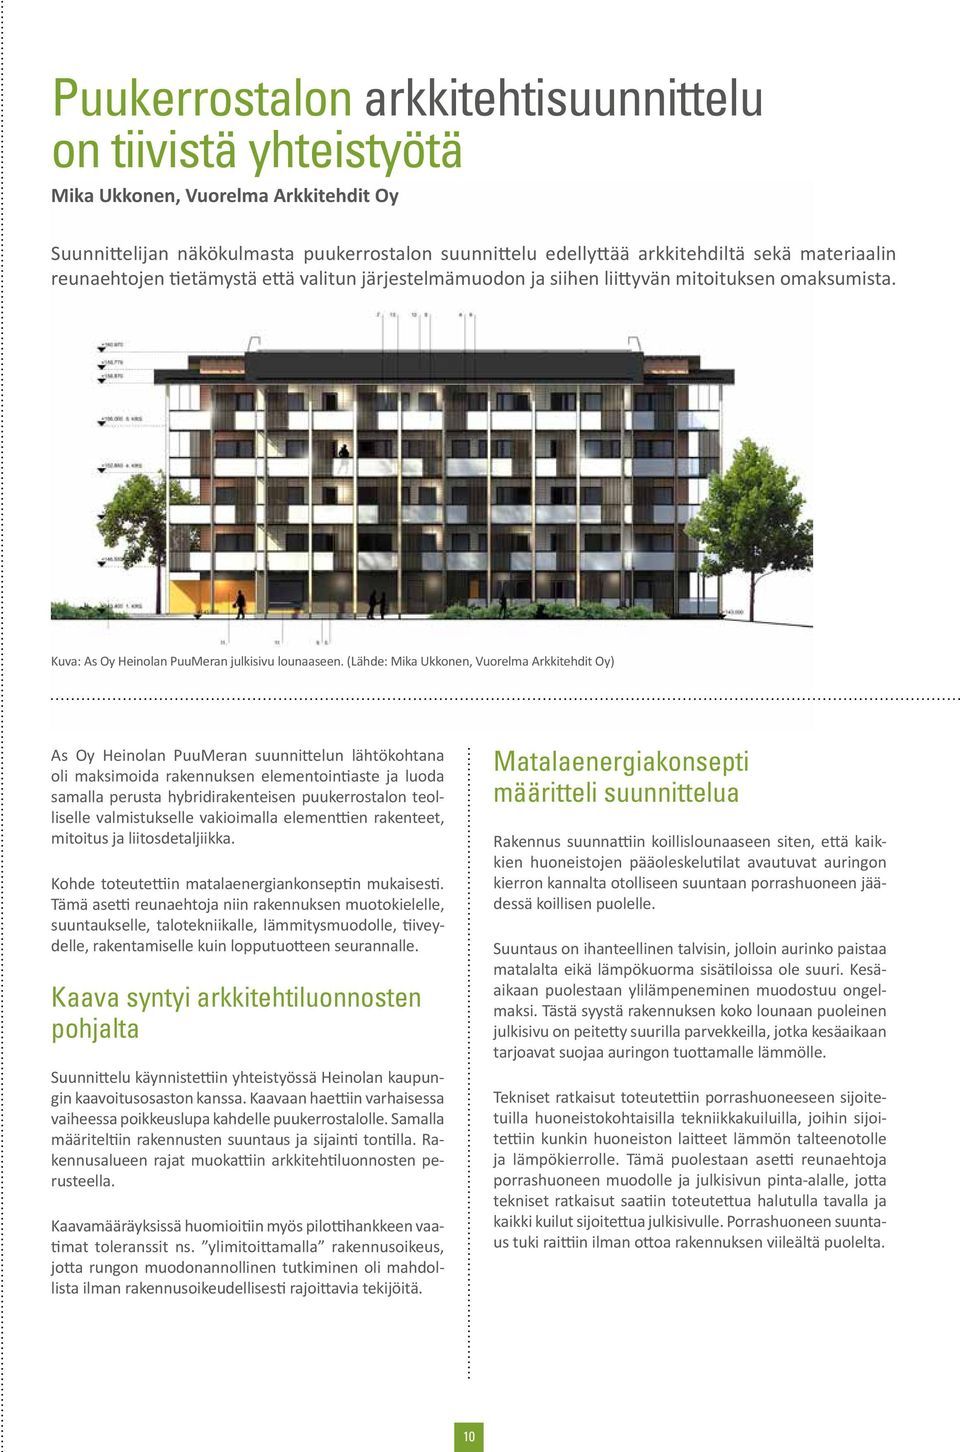 (Lähde: Mika Ukkonen, Vuorelma Arkkitehdit Oy) As Oy Heinolan PuuMeran suunnittelun lähtökohtana oli maksimoida rakennuksen elementointiaste ja luoda samalla perusta hybridirakenteisen puukerrostalon